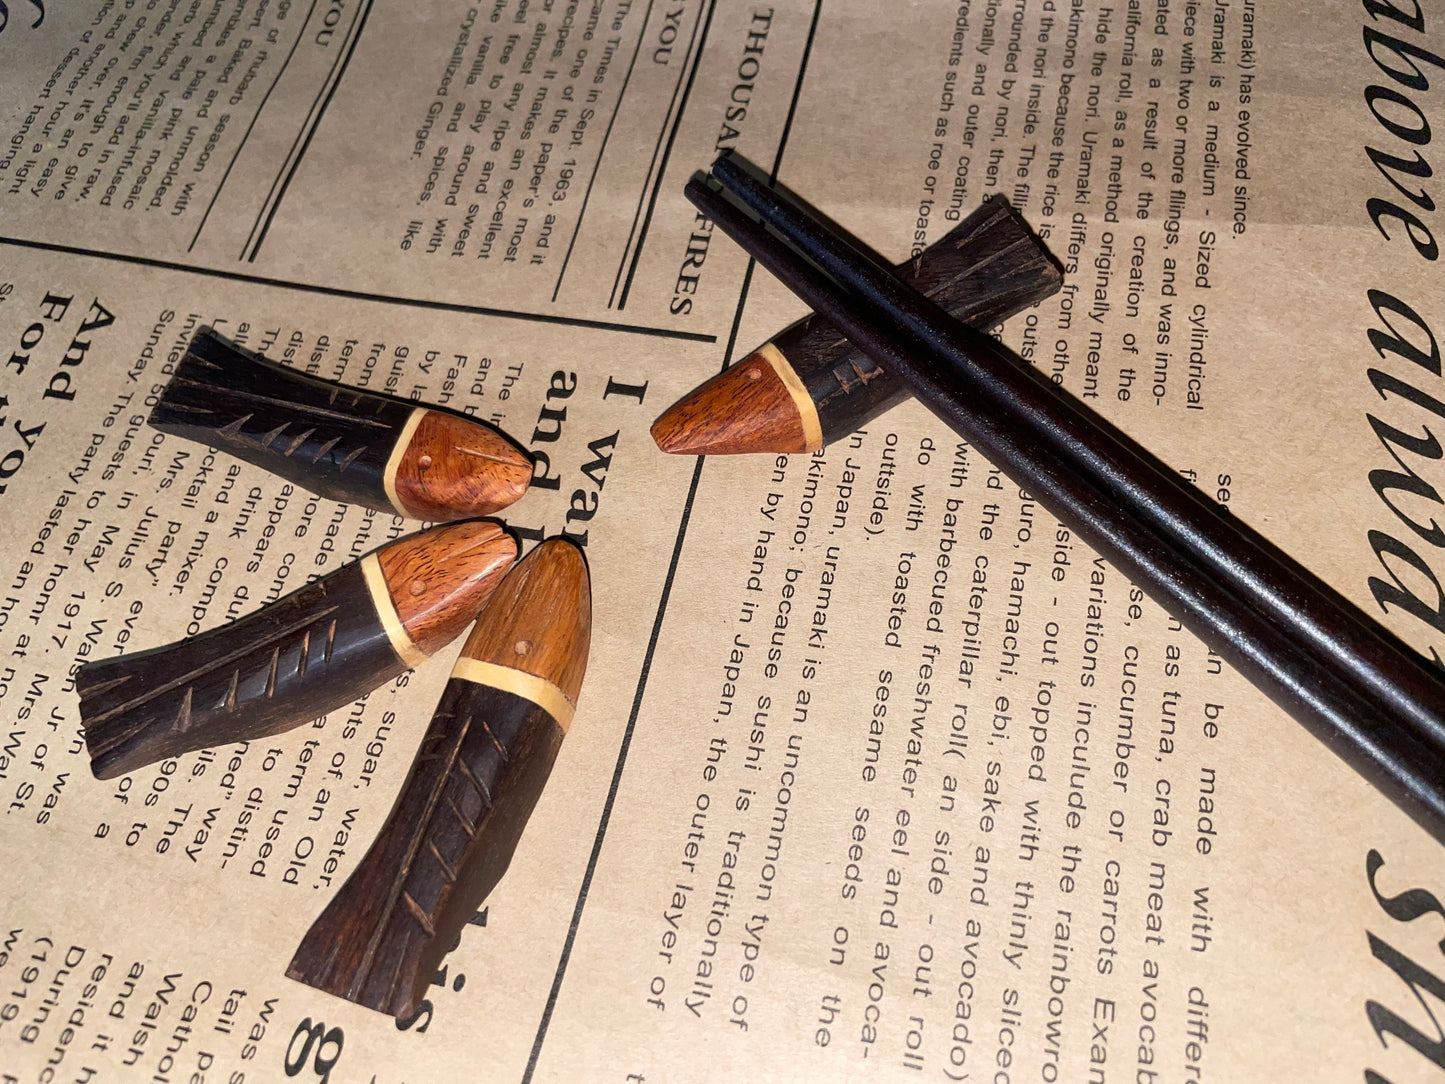 Handcrafted Wooden Chopstick Rest Spoon Fork Knife Holder Fish Designed